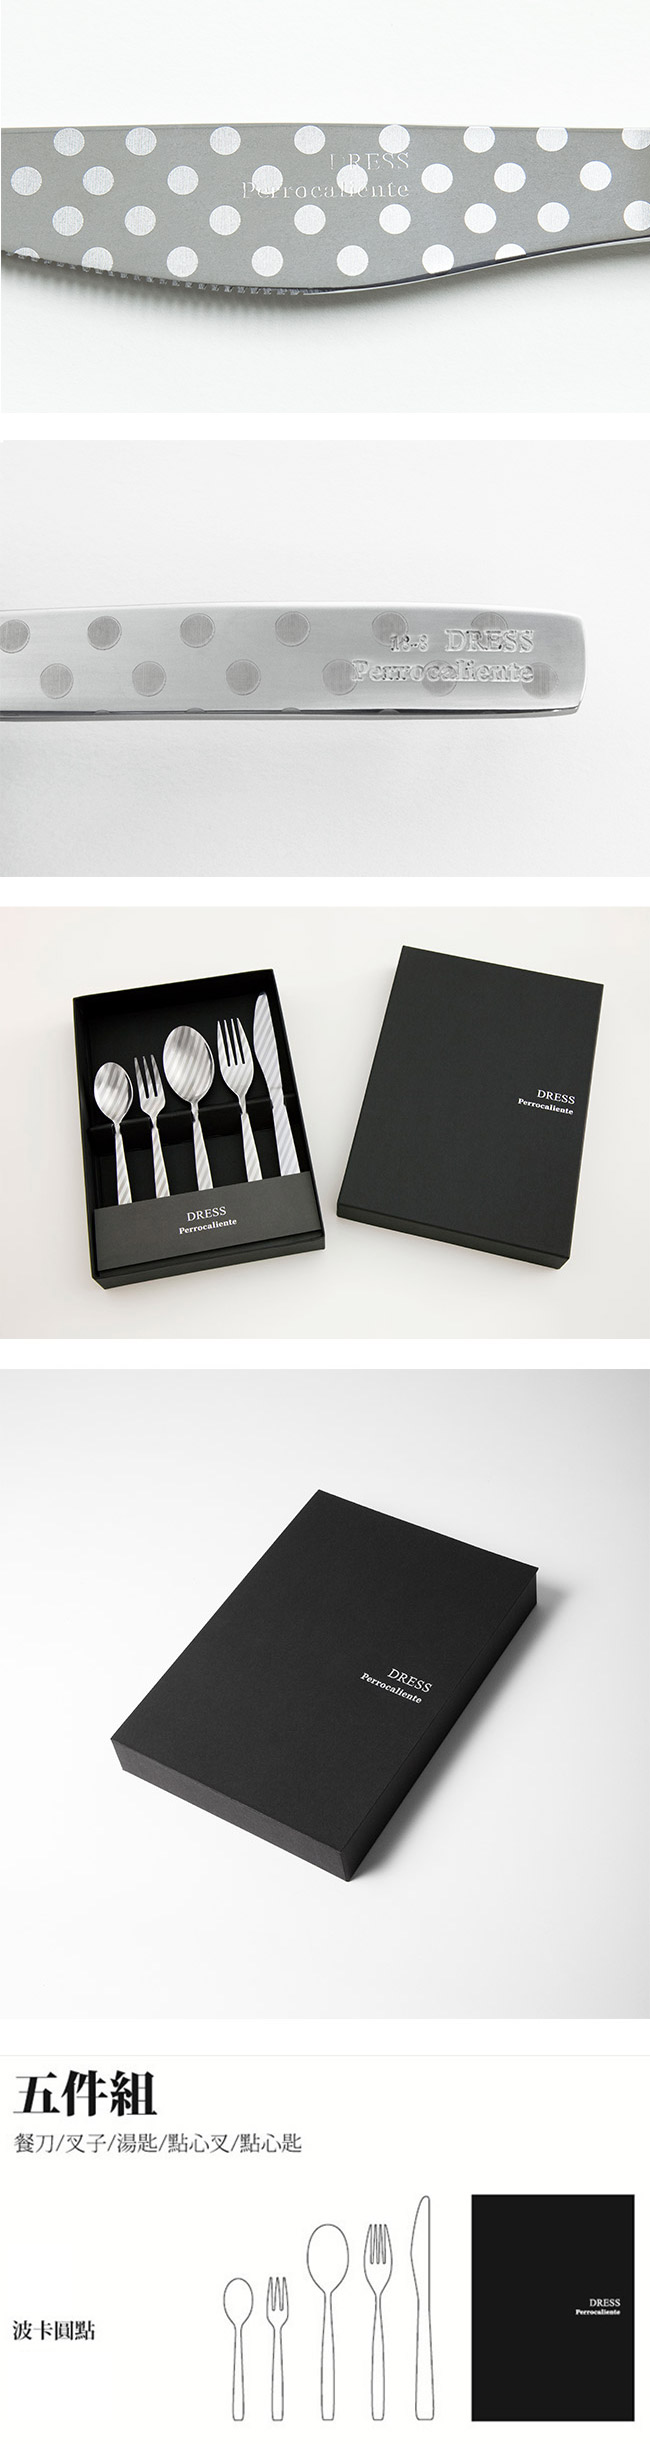 【4/16~4/22精選品牌9折優惠】Perrocaliente Dress Gift Set 銀色盒裝餐具組 五件組 波卡圓點